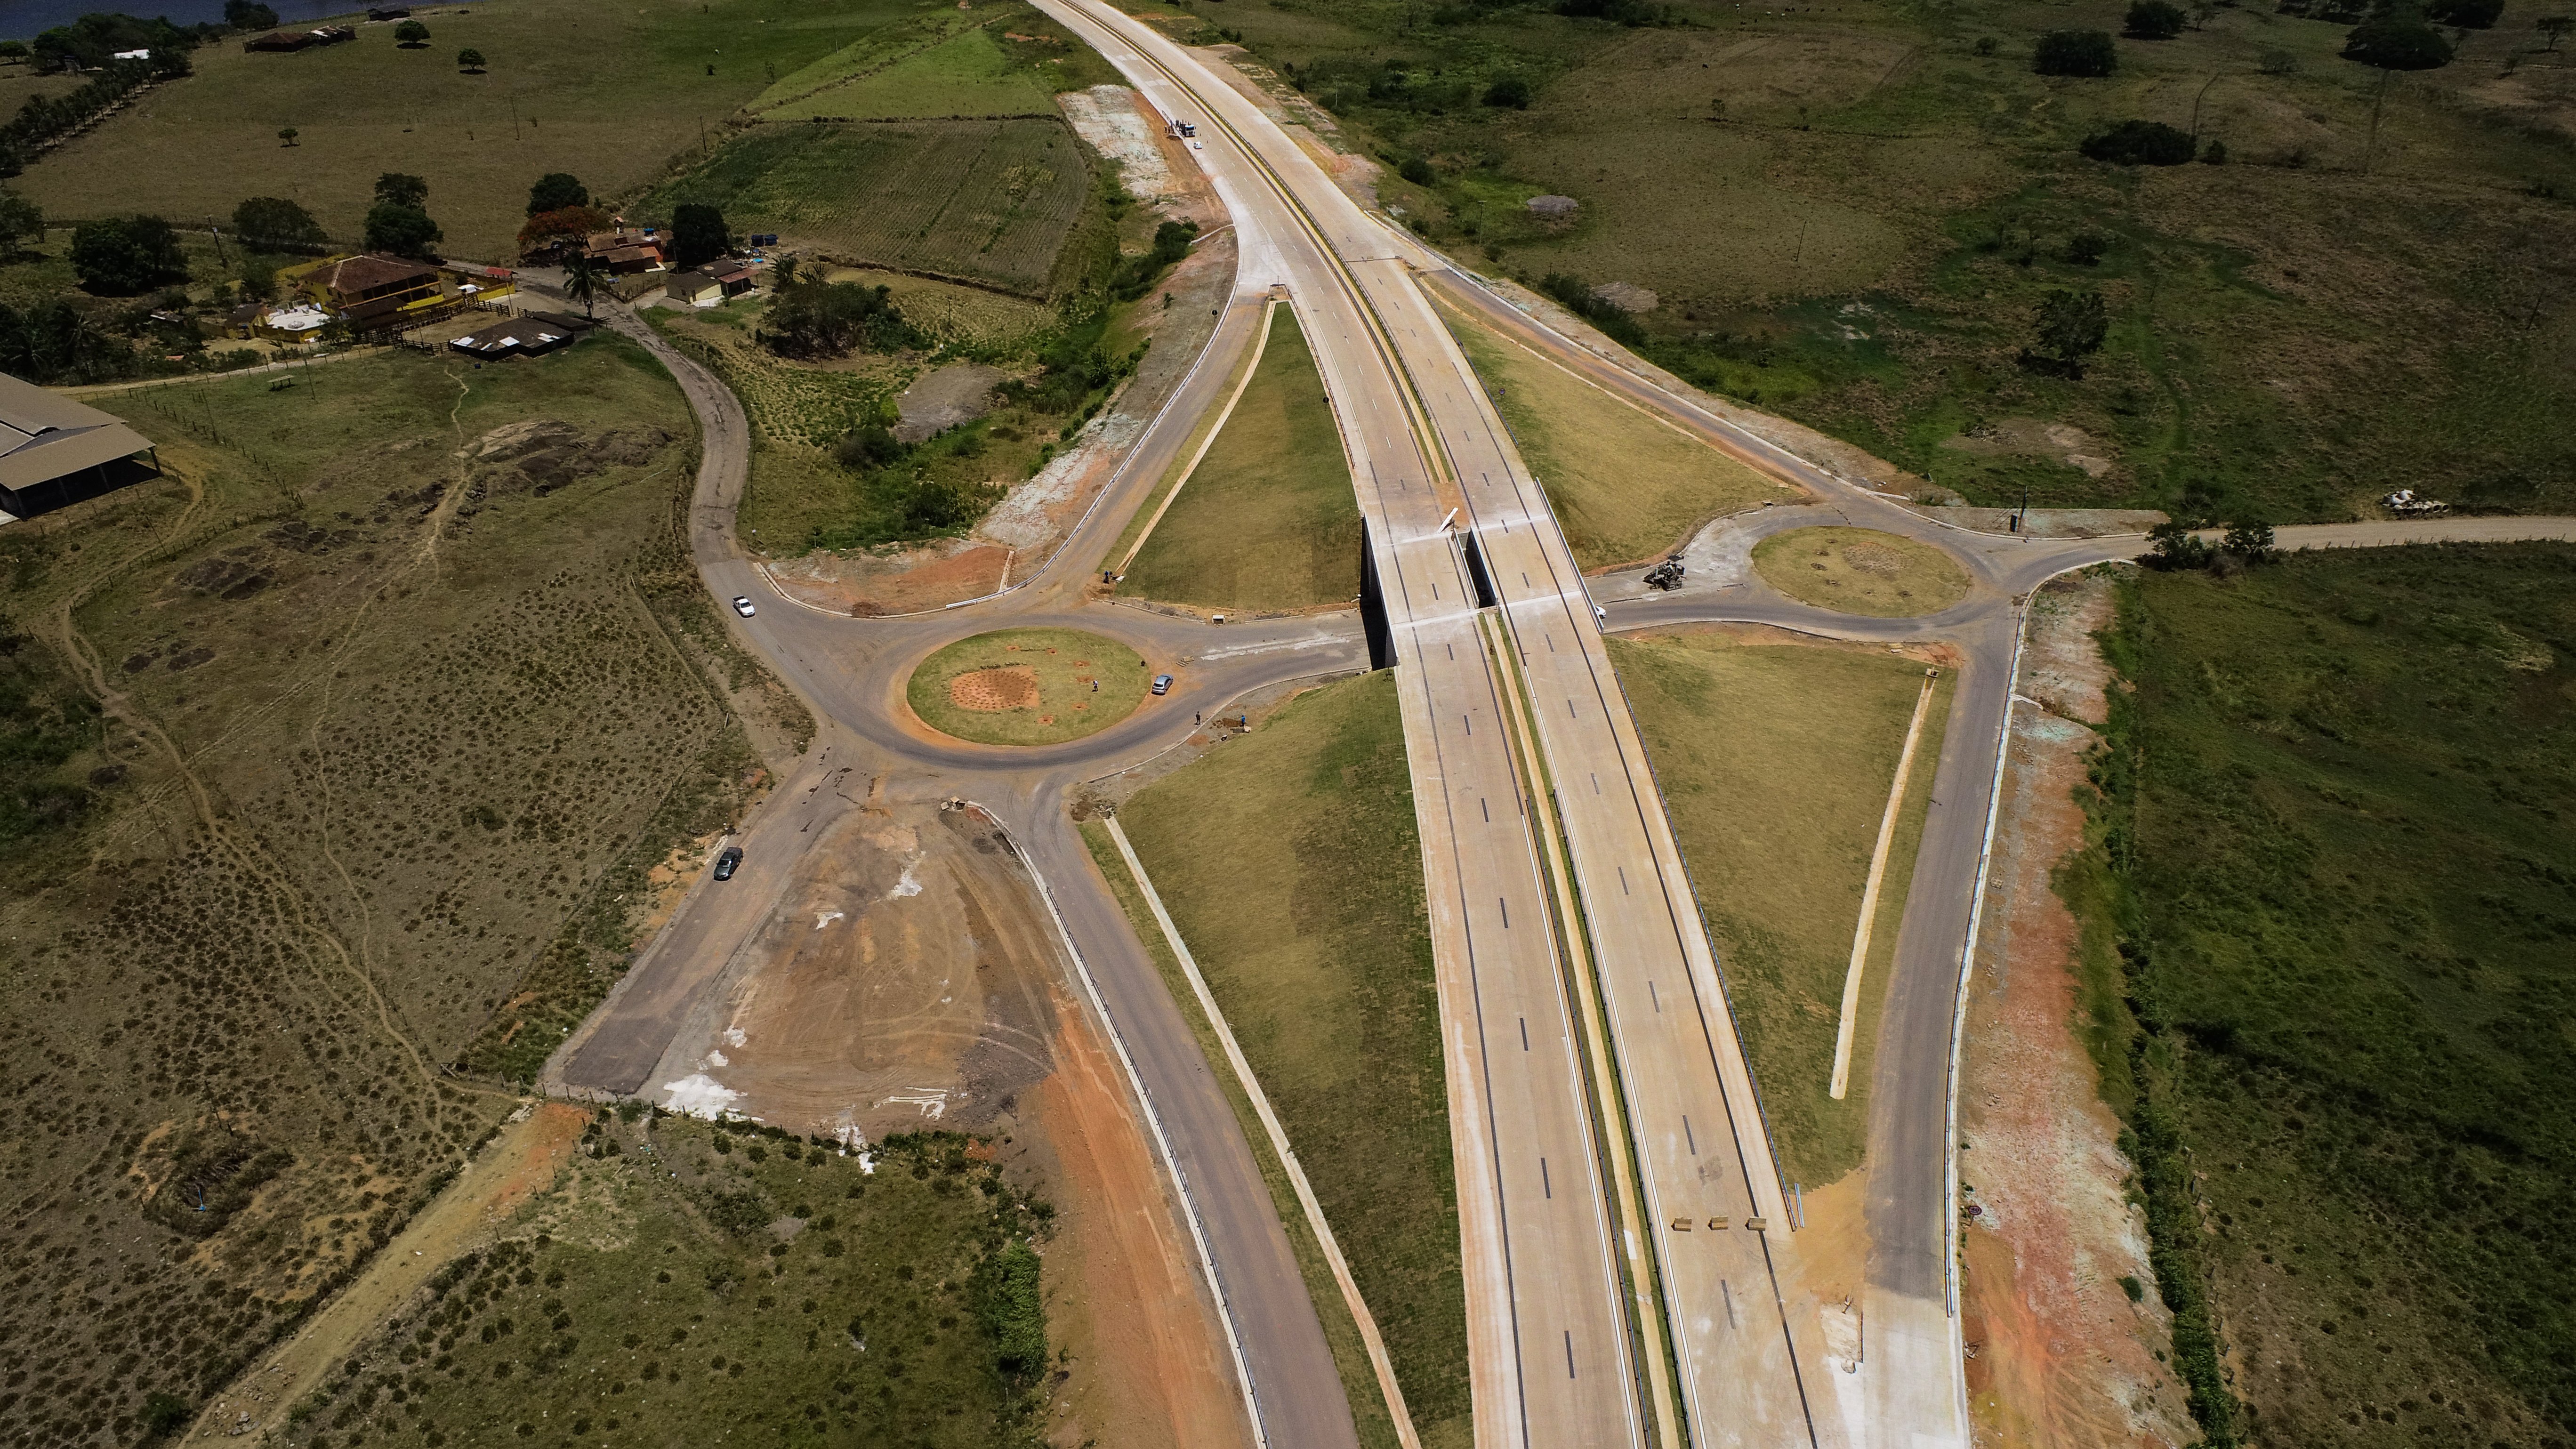 A via teve investimento de R$ 456 milhões e conta com recursos de engenharia para superar as dificuldades estabelecidas pelo solo alagadiço da região